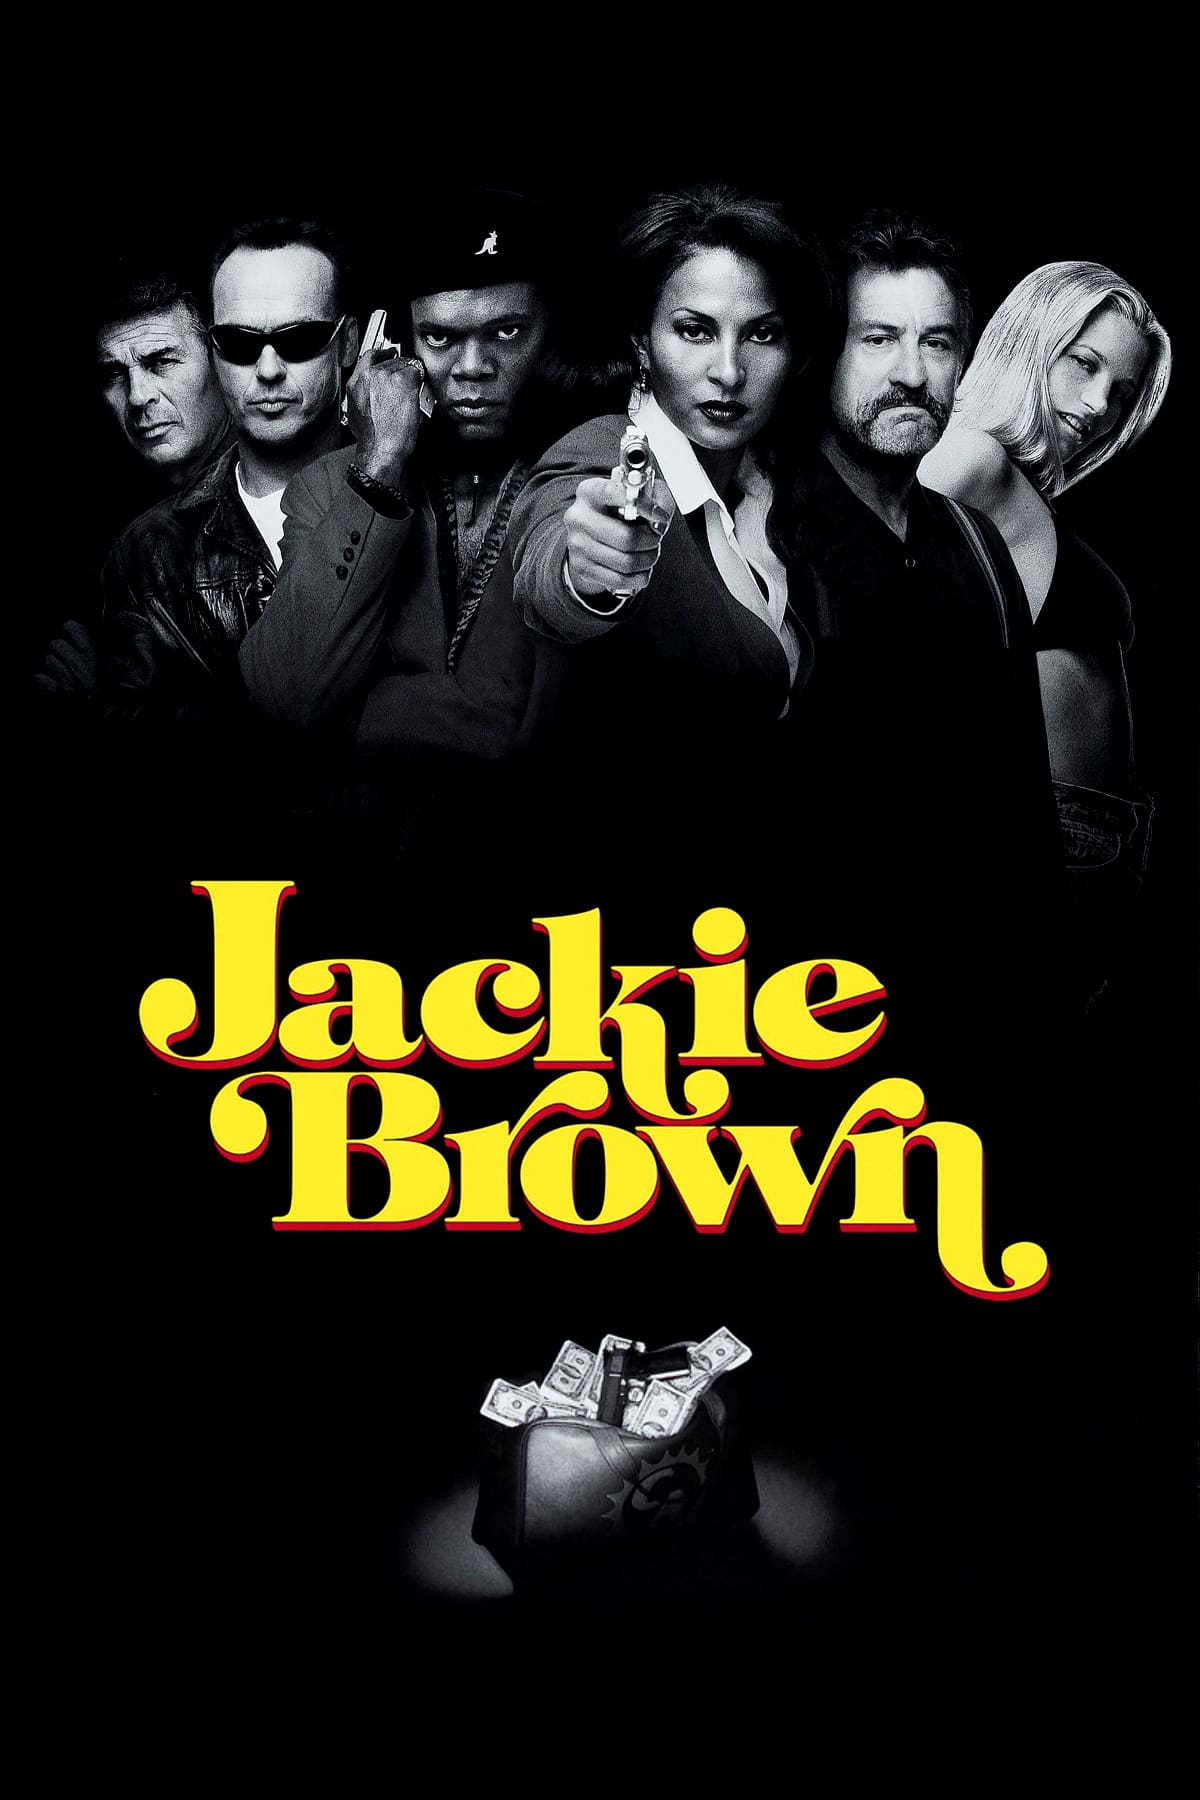 Plakat von "Jackie Brown"